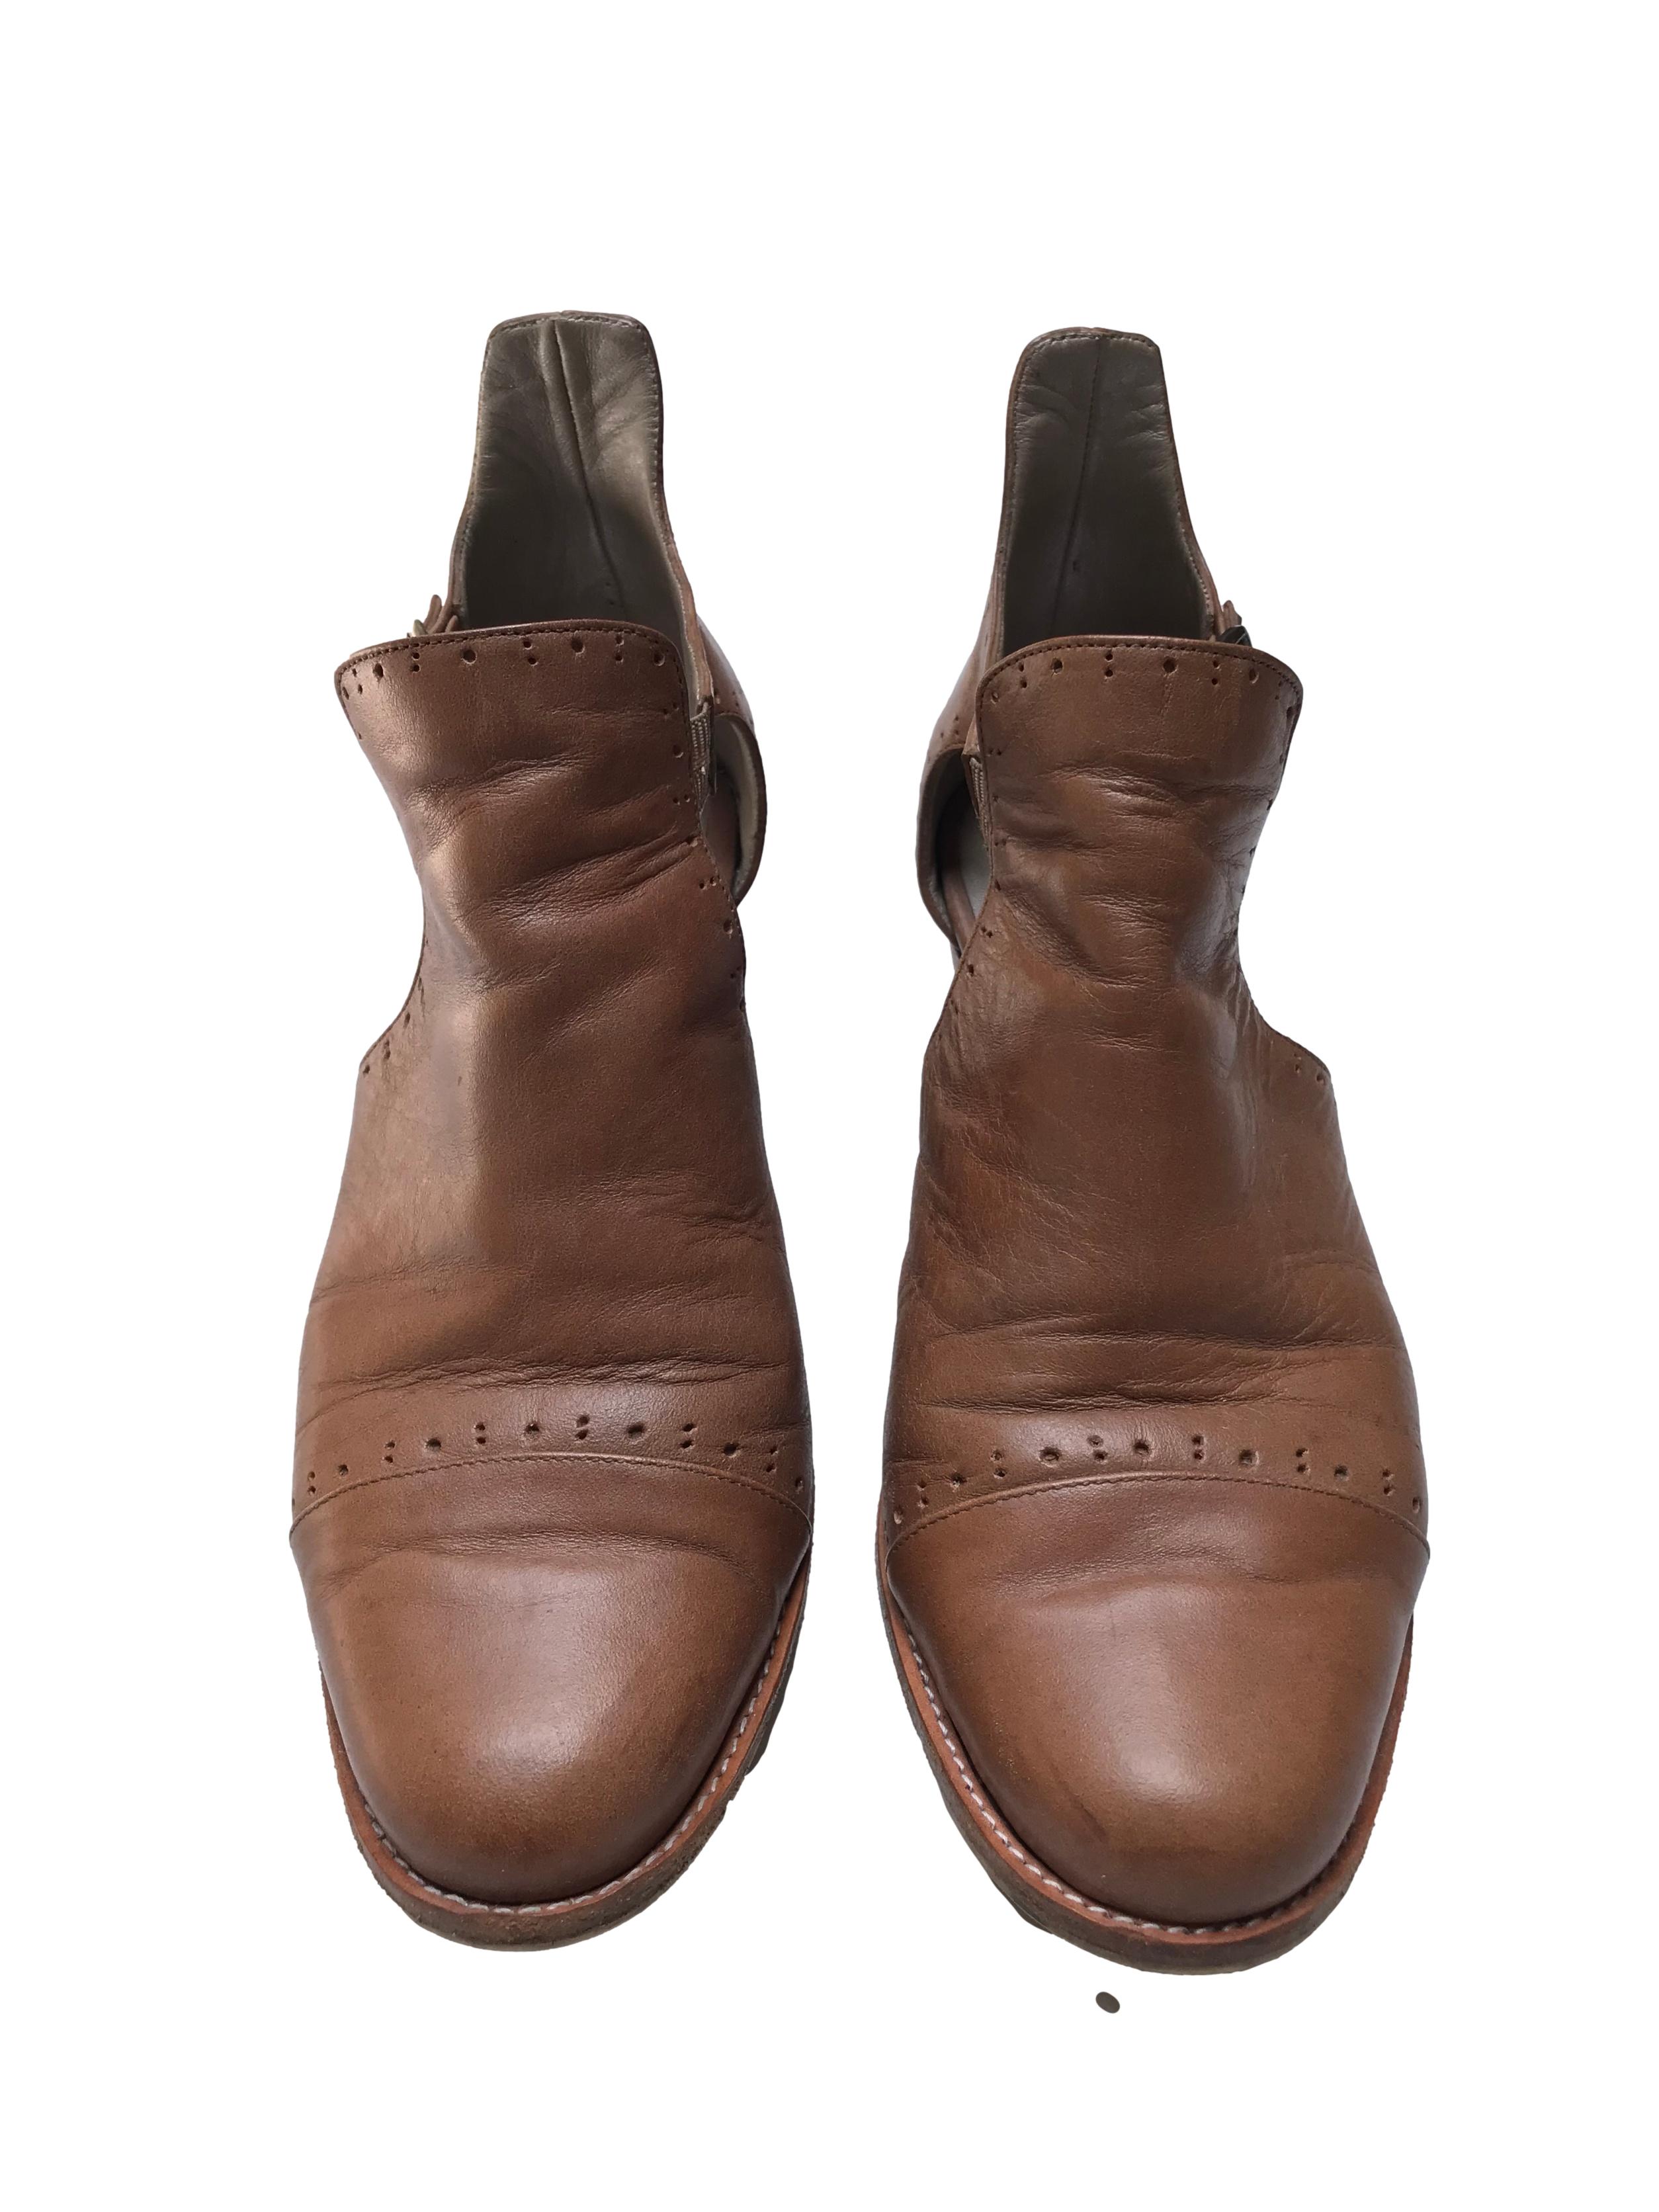 Zapatos artesanales Warmi 100% cuero, correa al tobillo, taco grueso 5cm. Tienen signos de uso pero el diseño es hermoso y el material muy duradero. Precio original estimado S/ 299